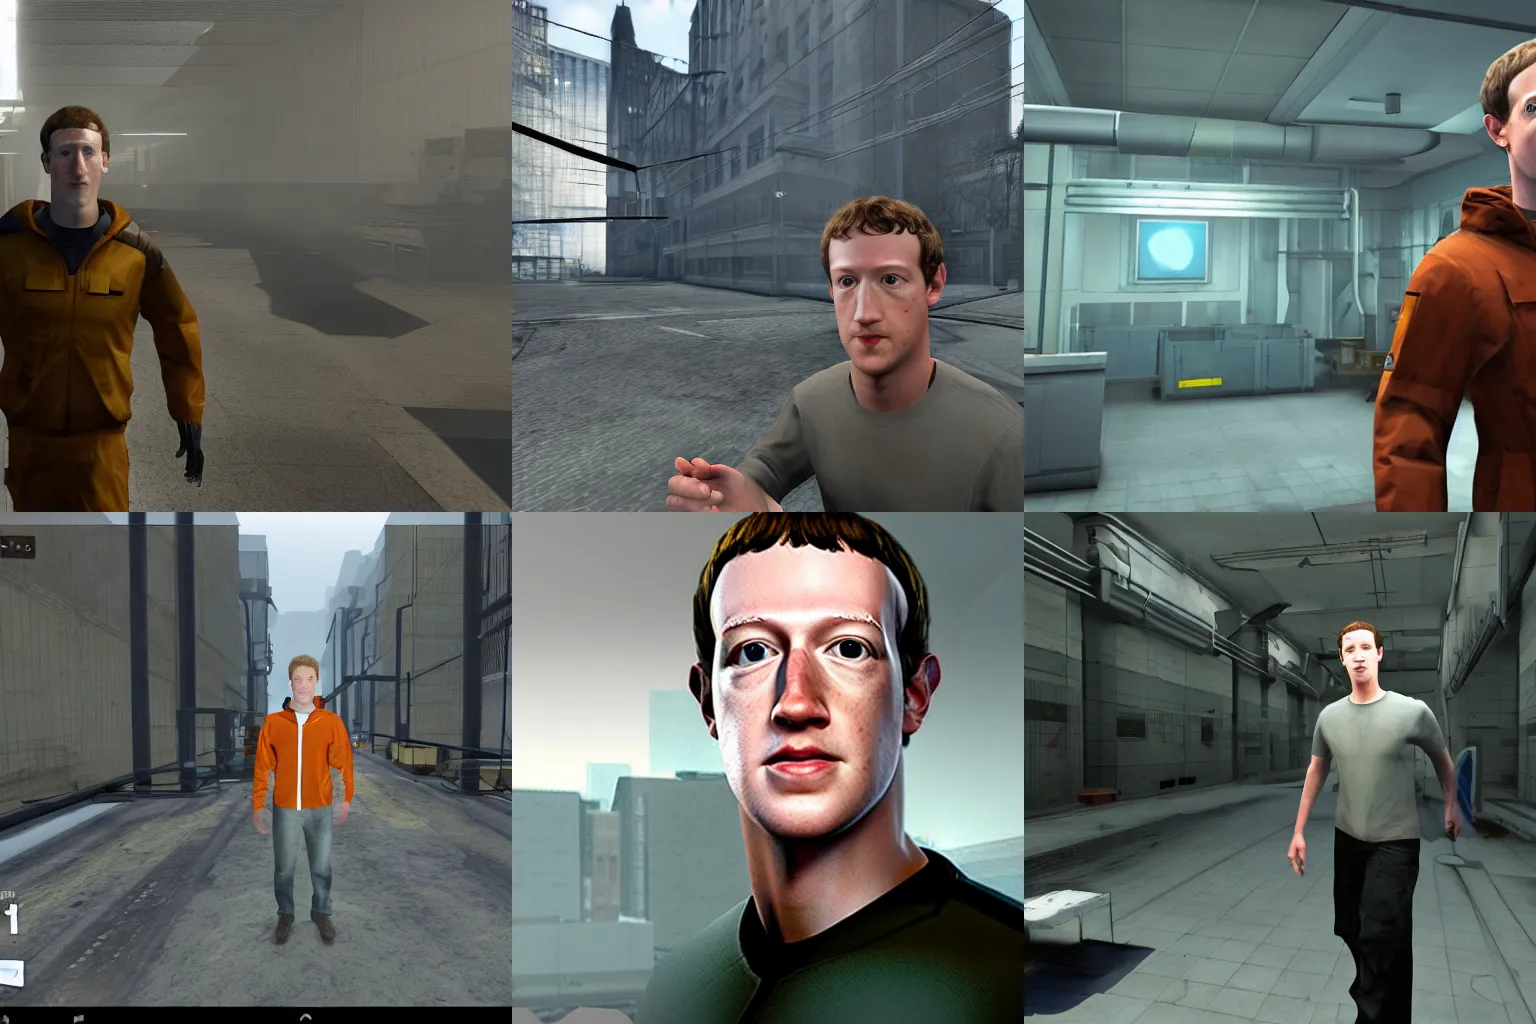 Prompt: Screenshot of Mark Zuckerberg in Half-Life 2